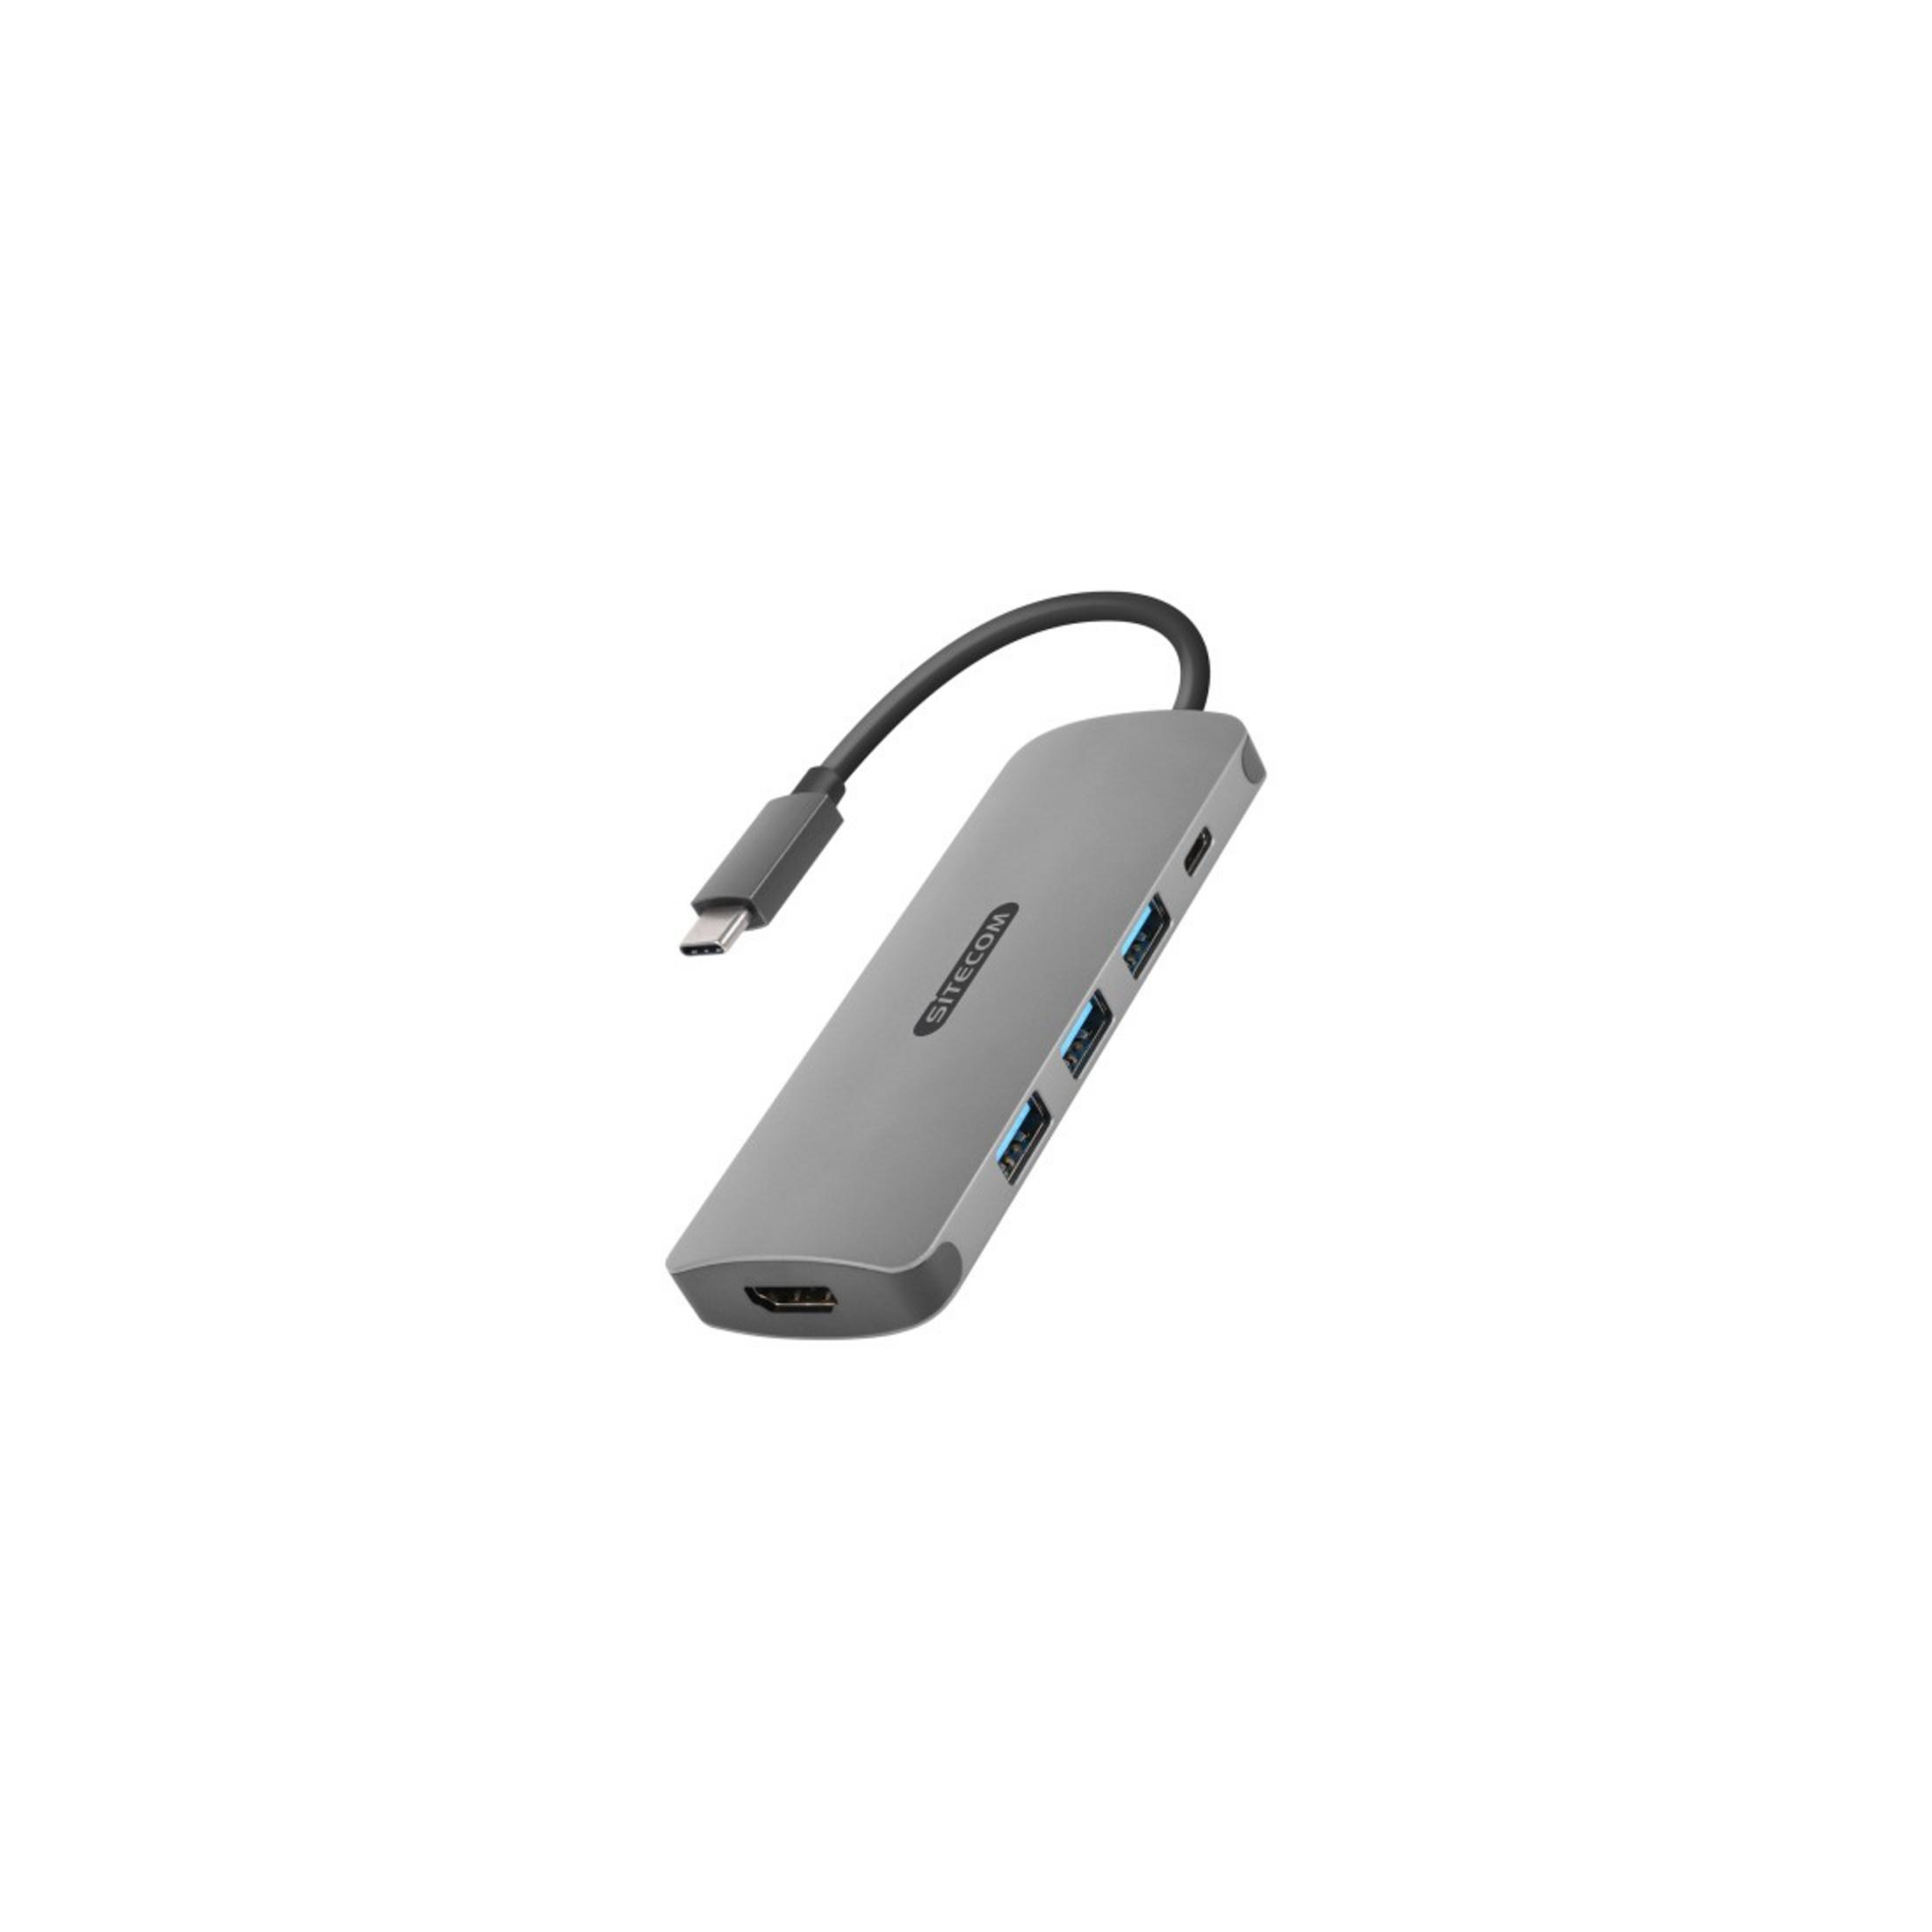 3.1 3XUSB3.0PD Silber CN-380 HDMI USB-C Adapter, TO USB SITECOM